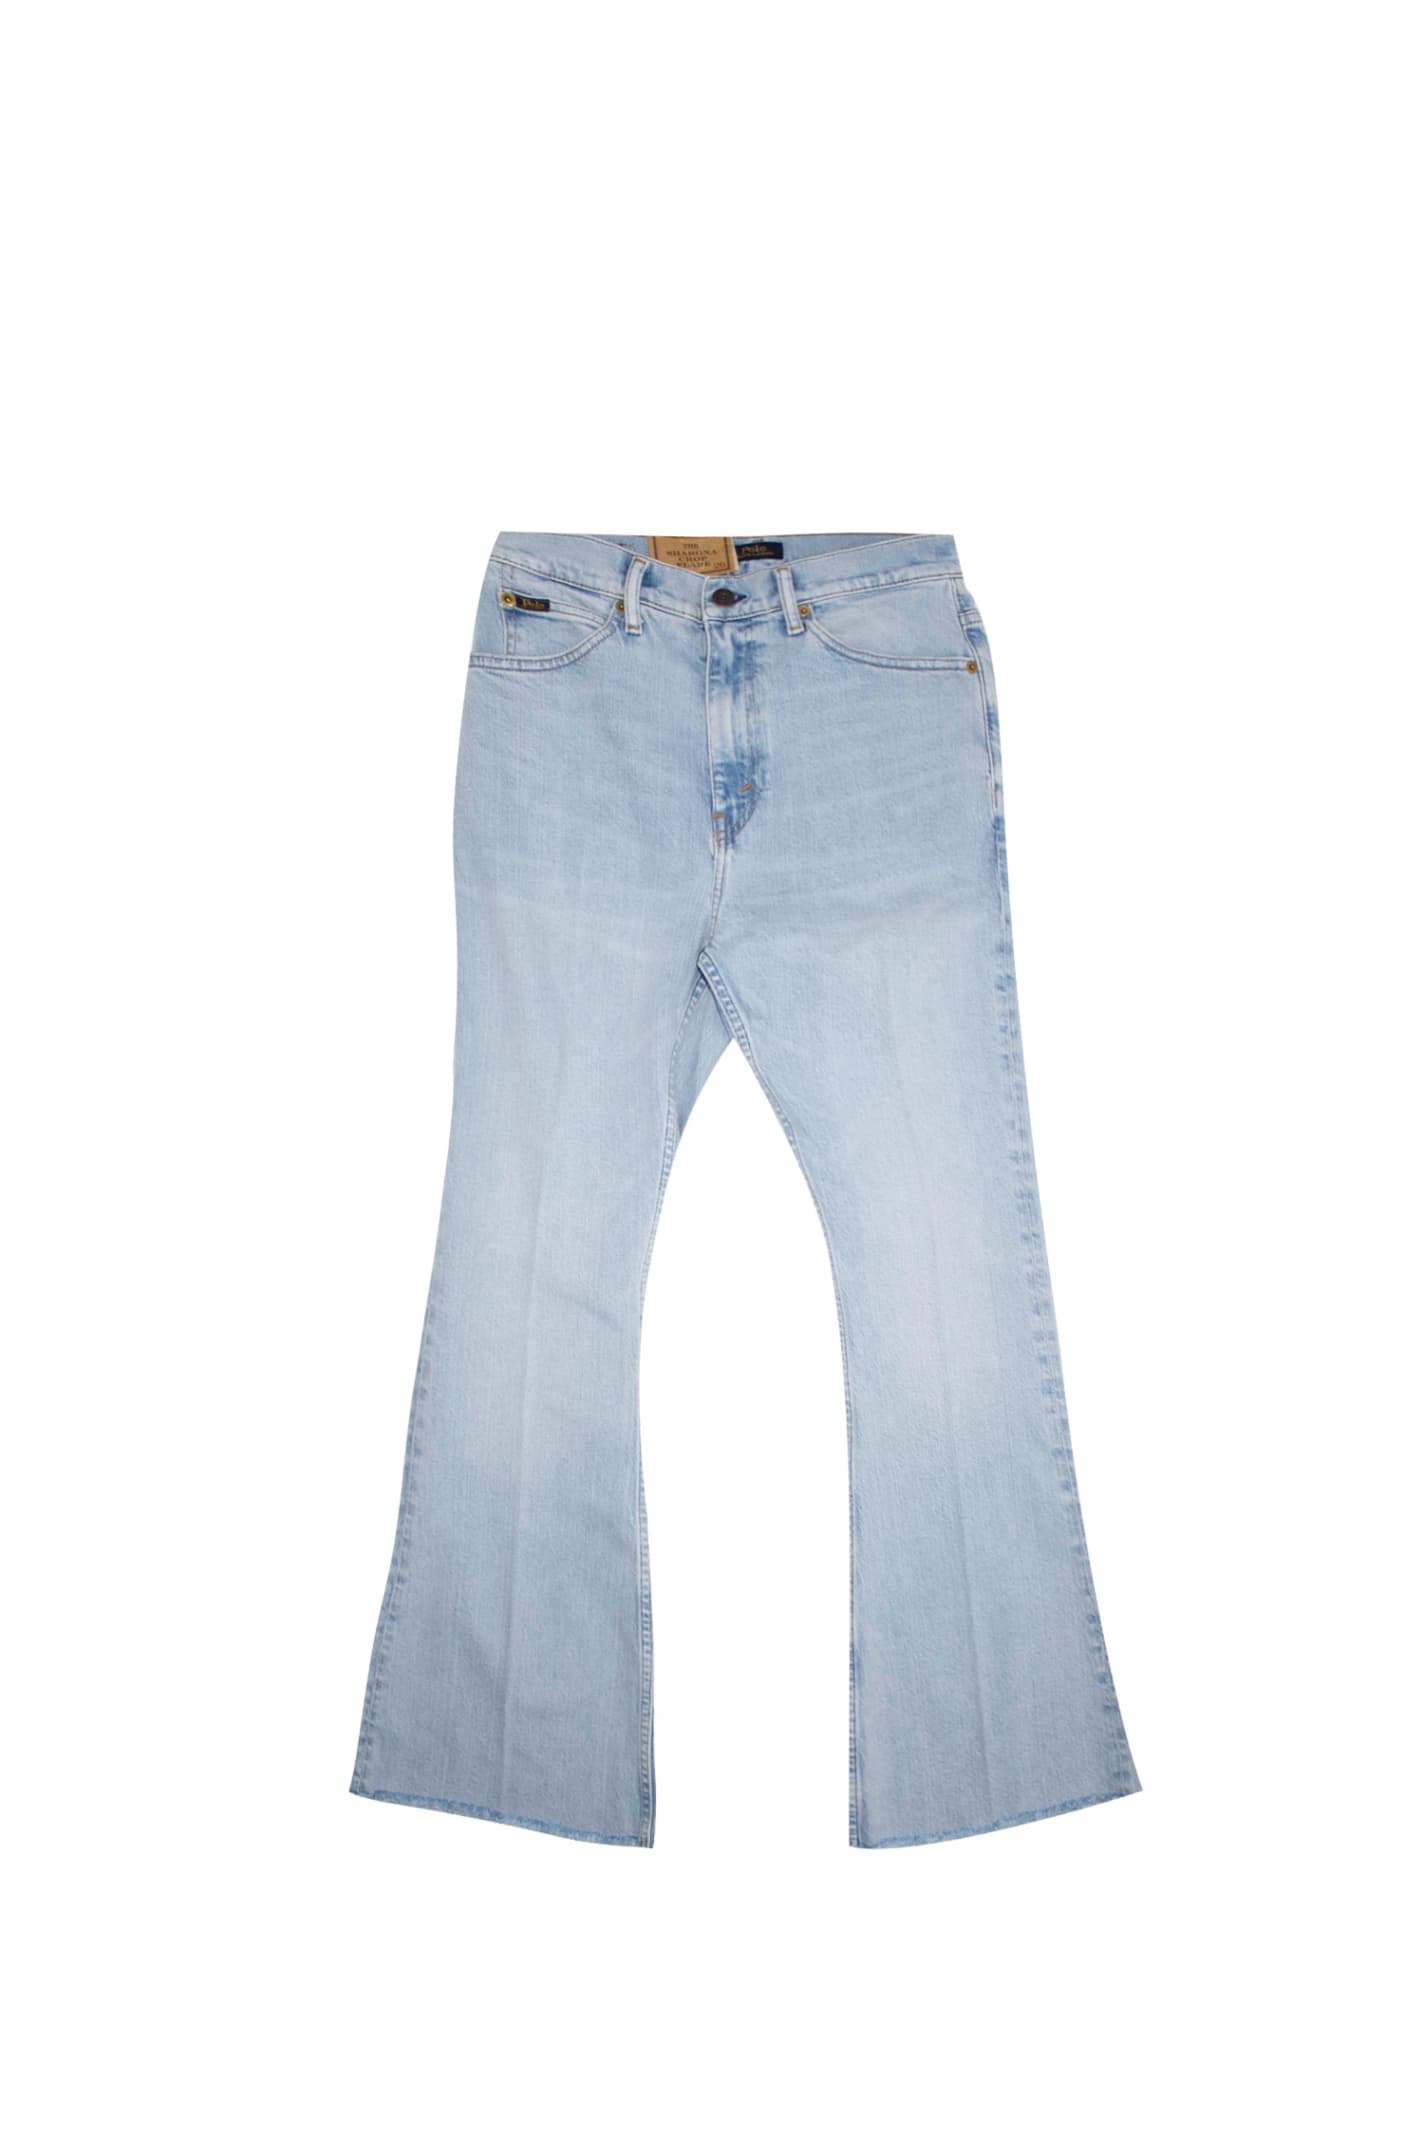 Ralph Lauren Sharona Jeans